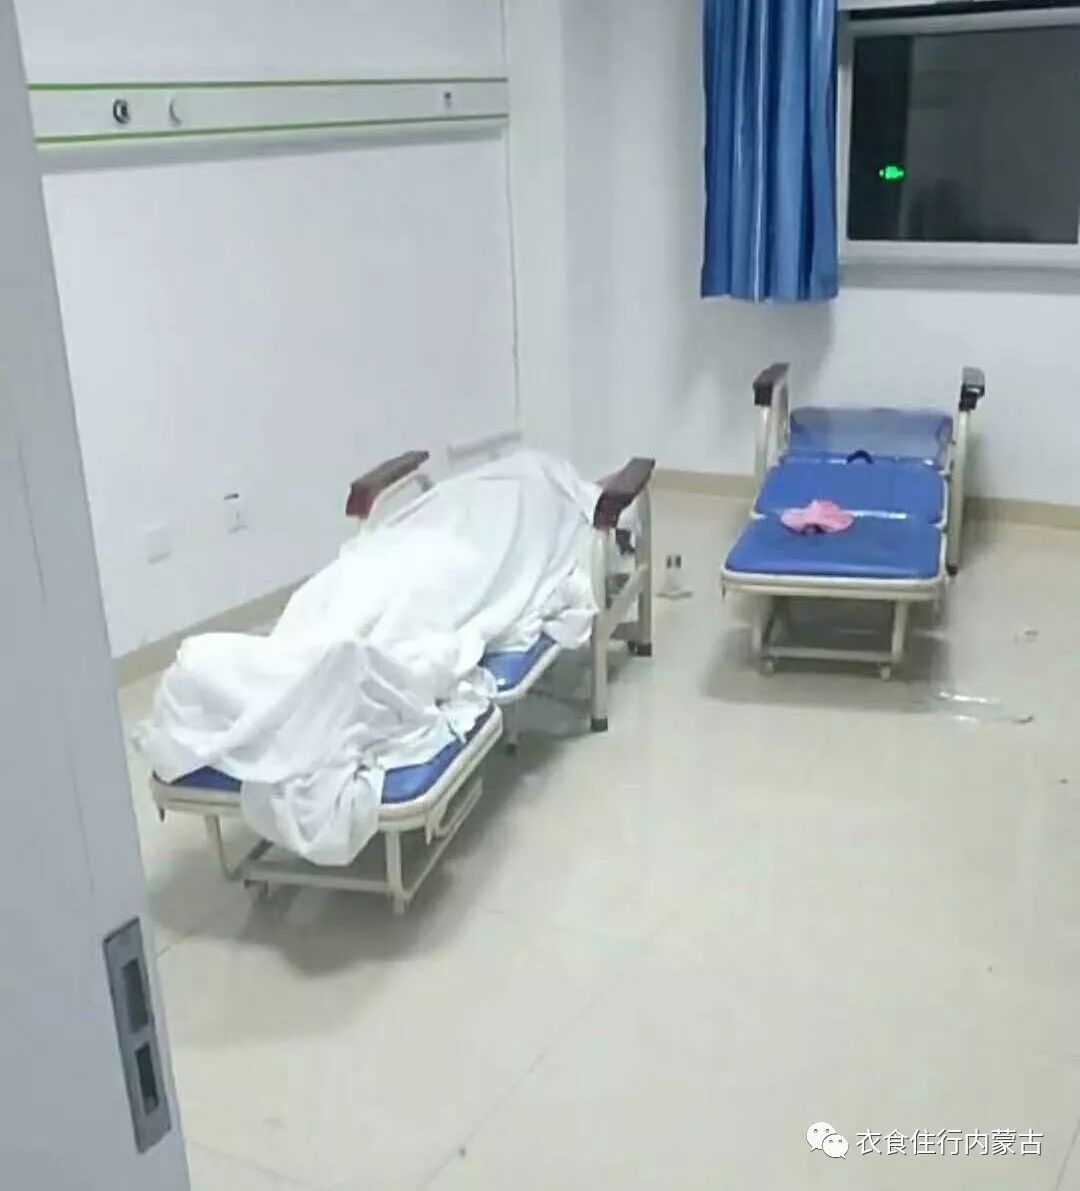 患者已死亡,在医院里,据说医院太平间不让用.